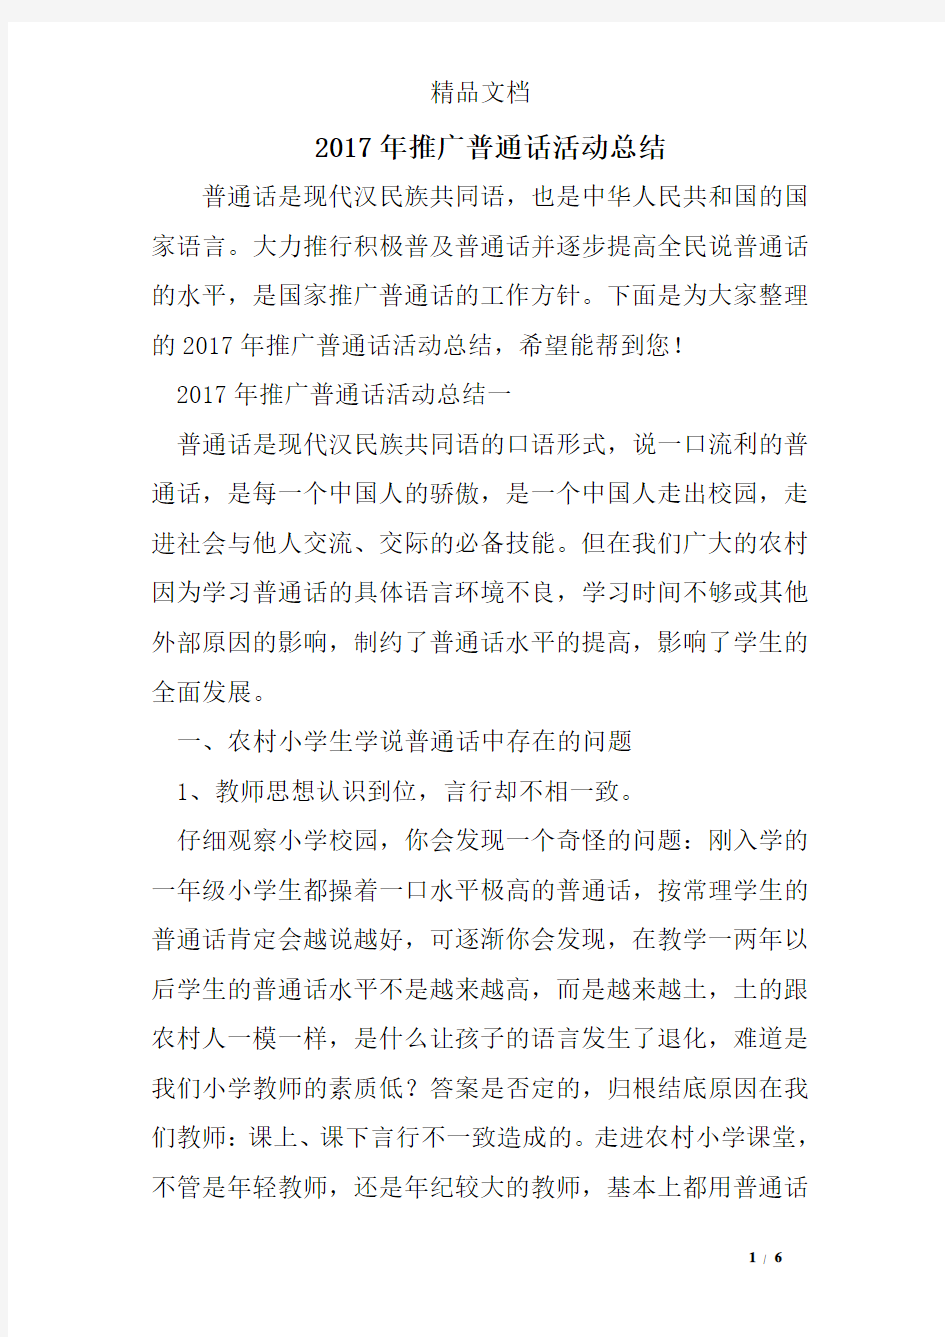 2017年推广普通话活动总结